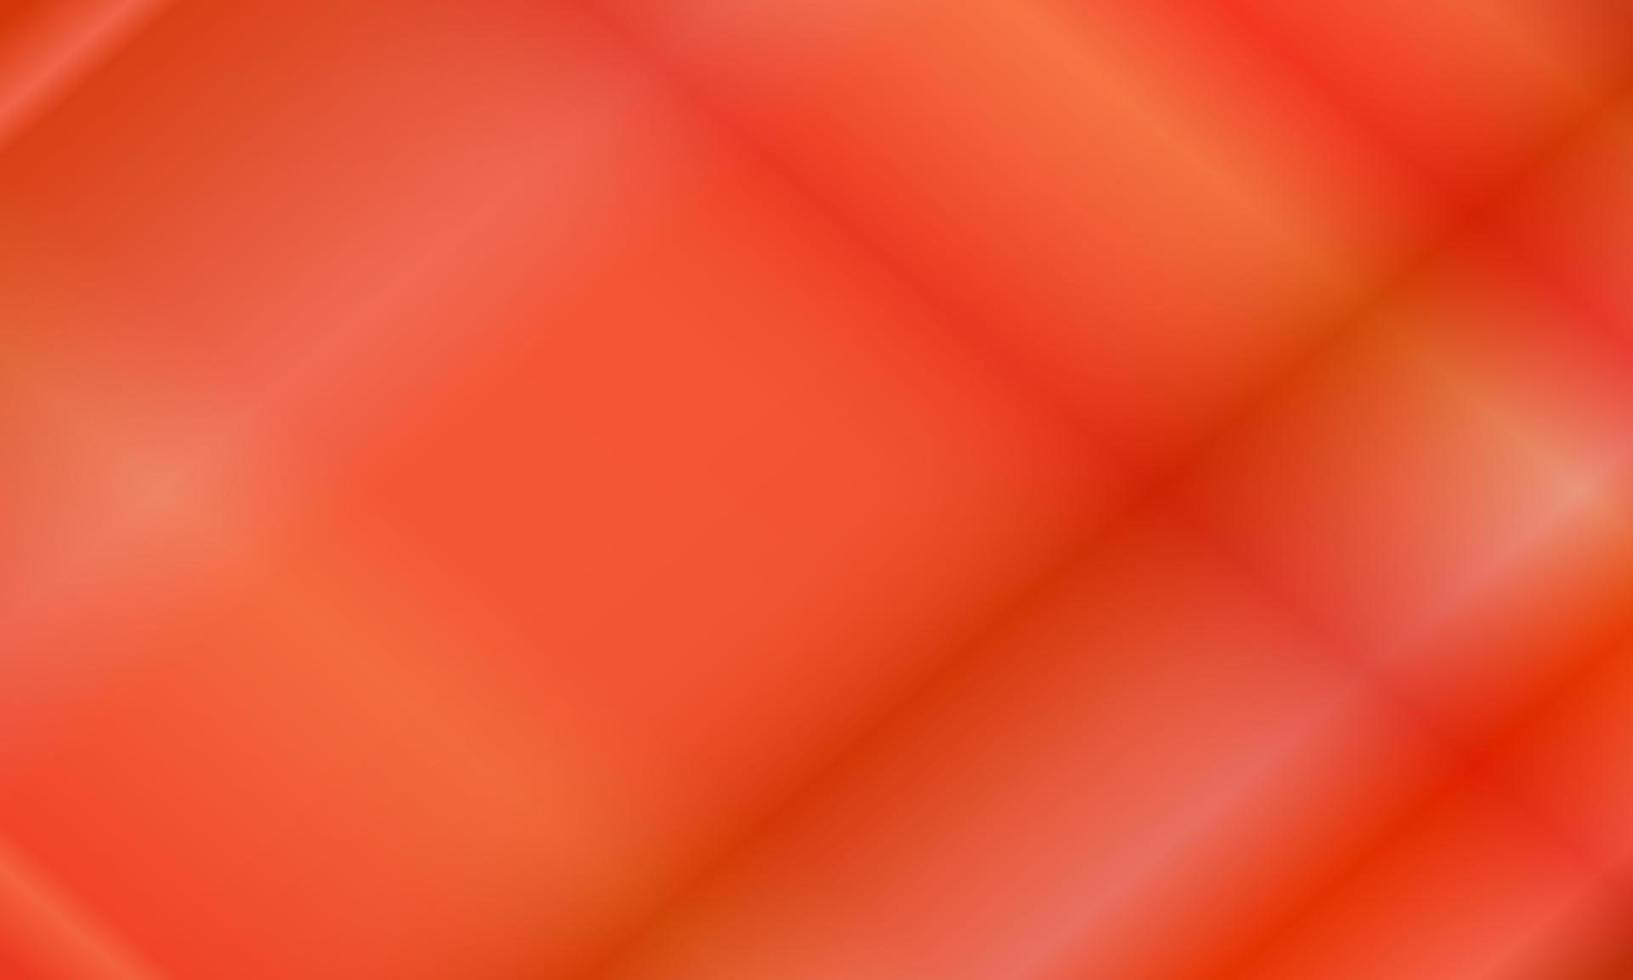 roter und dunkelorangefarbener heller Neon abstrakter Hintergrund. glänzender, verschwommener, moderner und farbenfroher Stil. ideal für hintergrund, kopierraum, tapete, karte, cover, poster, banner oder flyer vektor